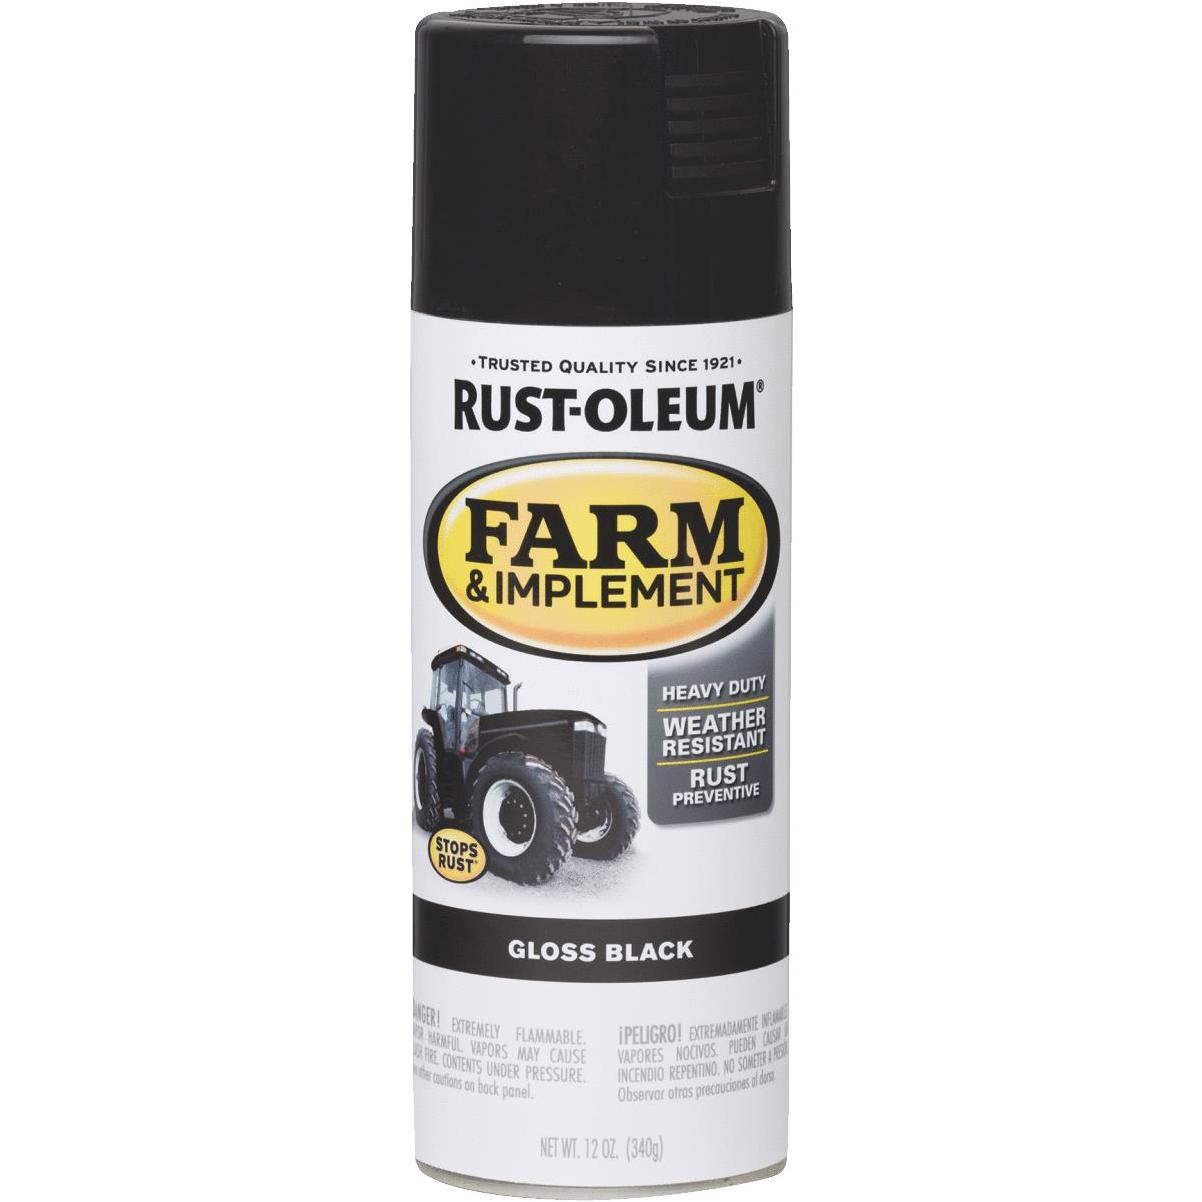 Rust-Oleum 12 oz. Dark Green Automotive Self-Etching Spray Primer